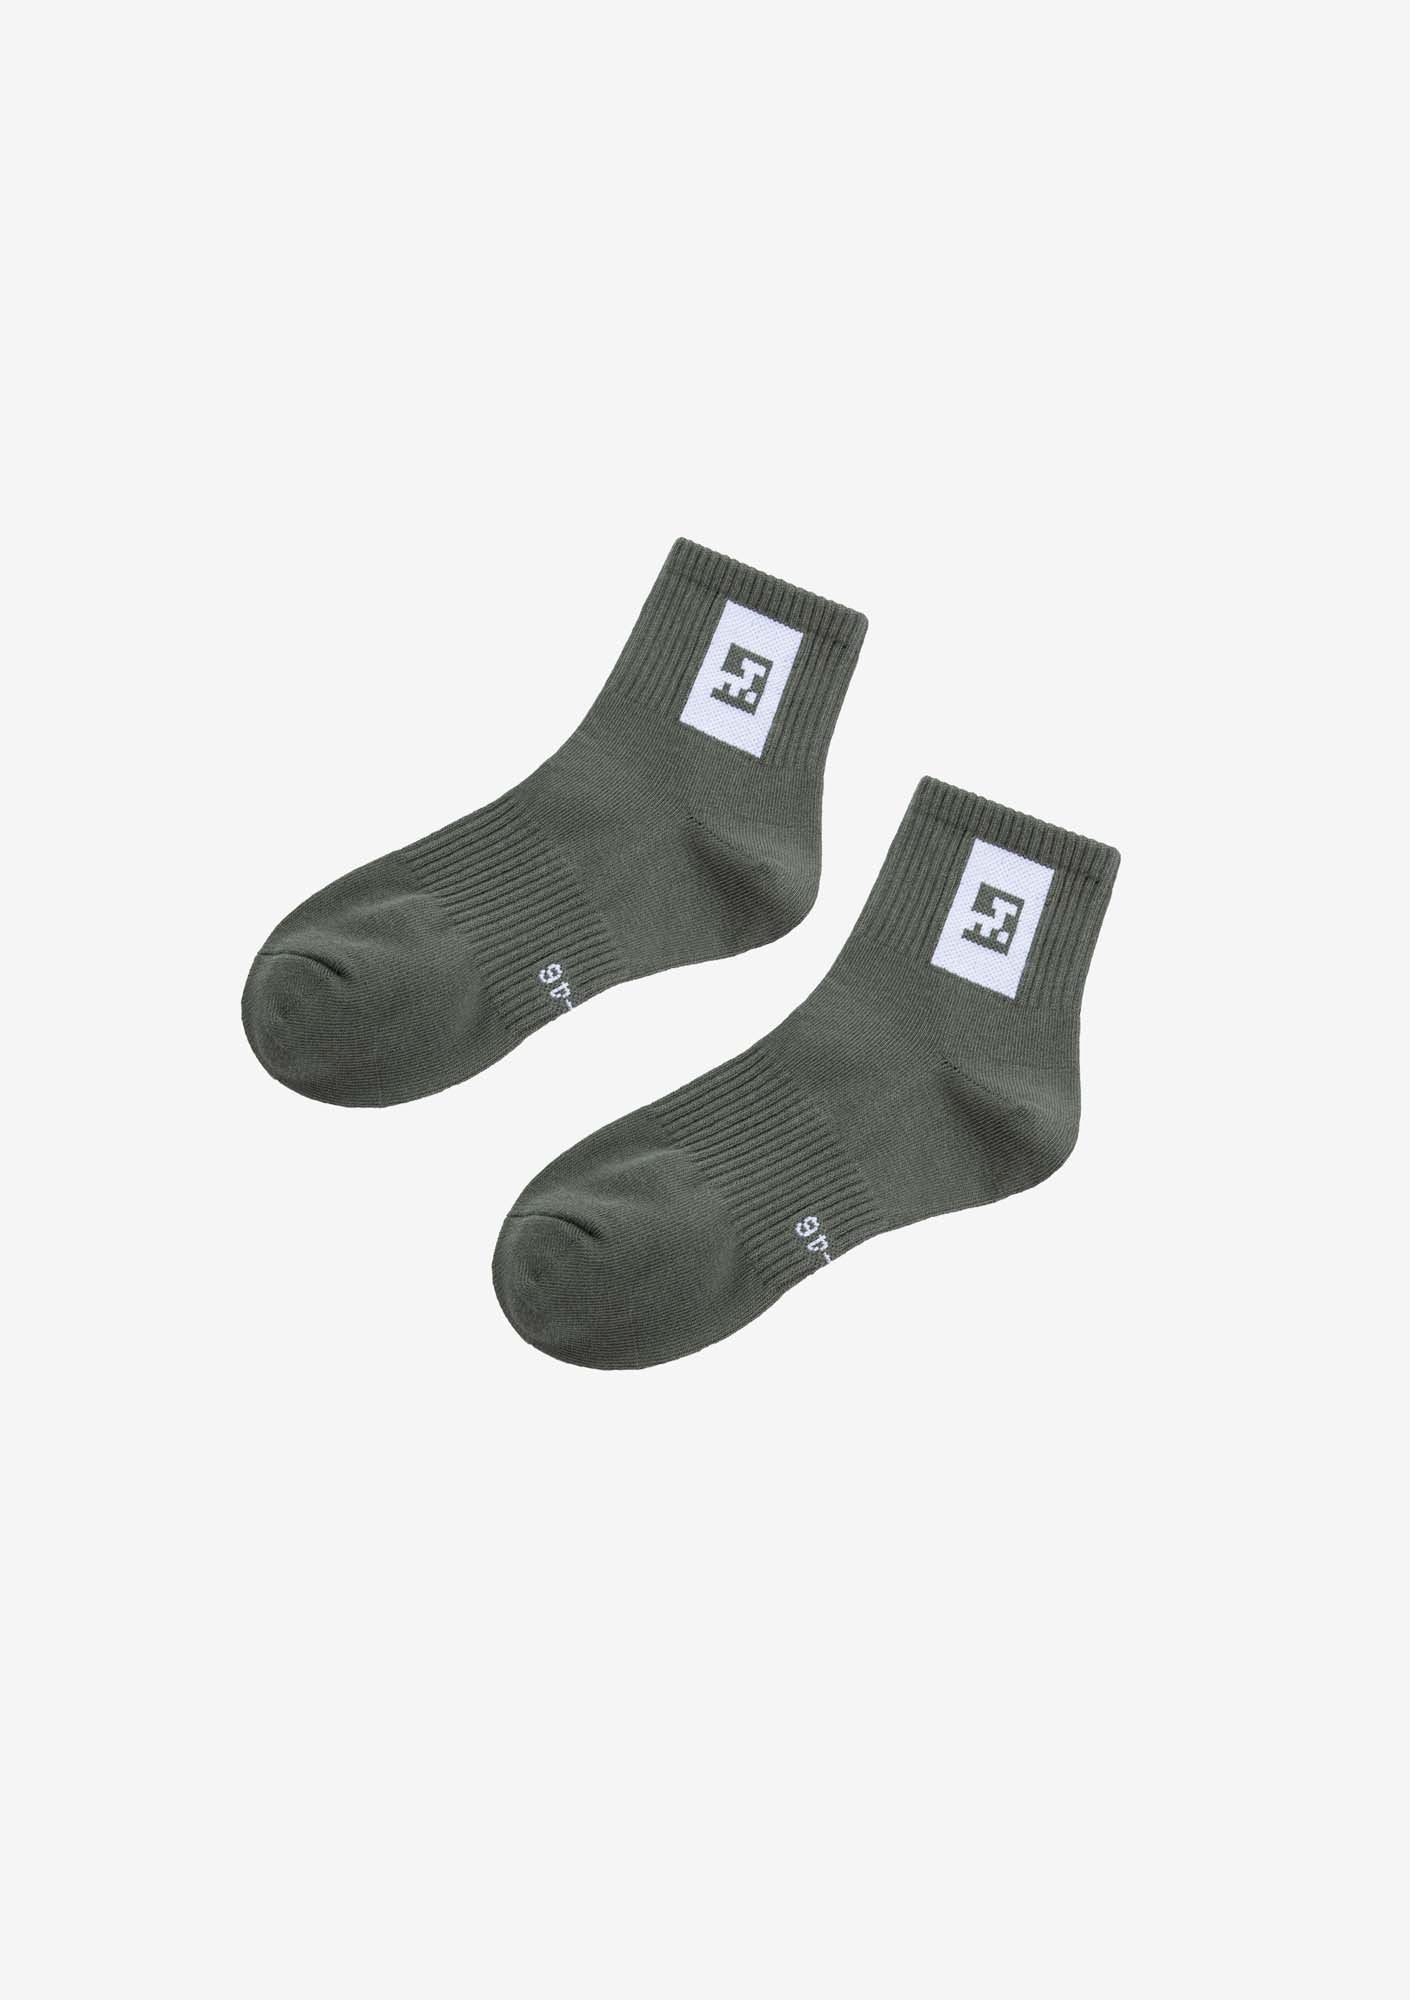 Носки Ankle Hu50-114 (З пары)